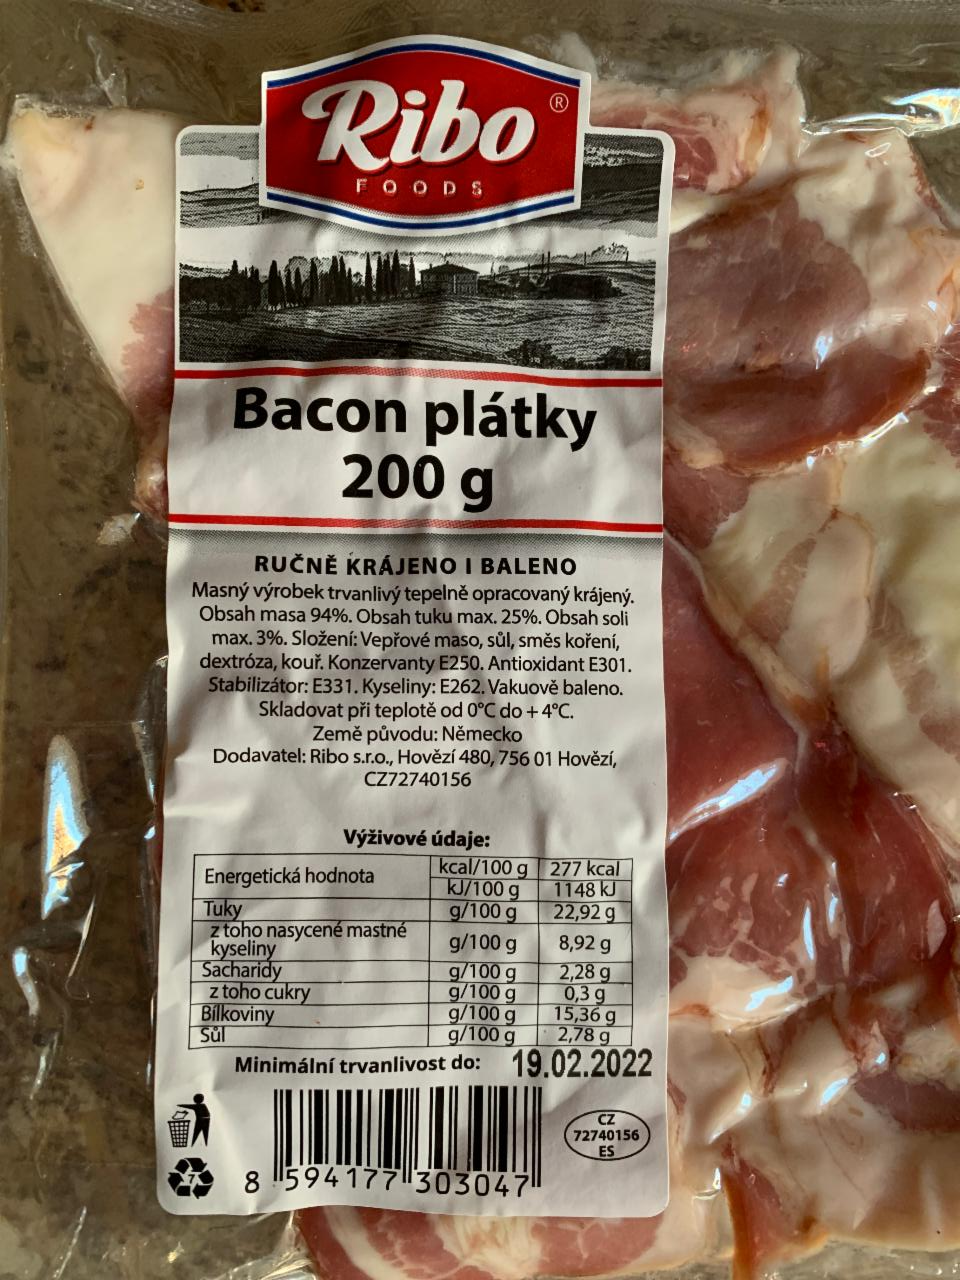 Fotografie - Bacon plátky Ribo foods